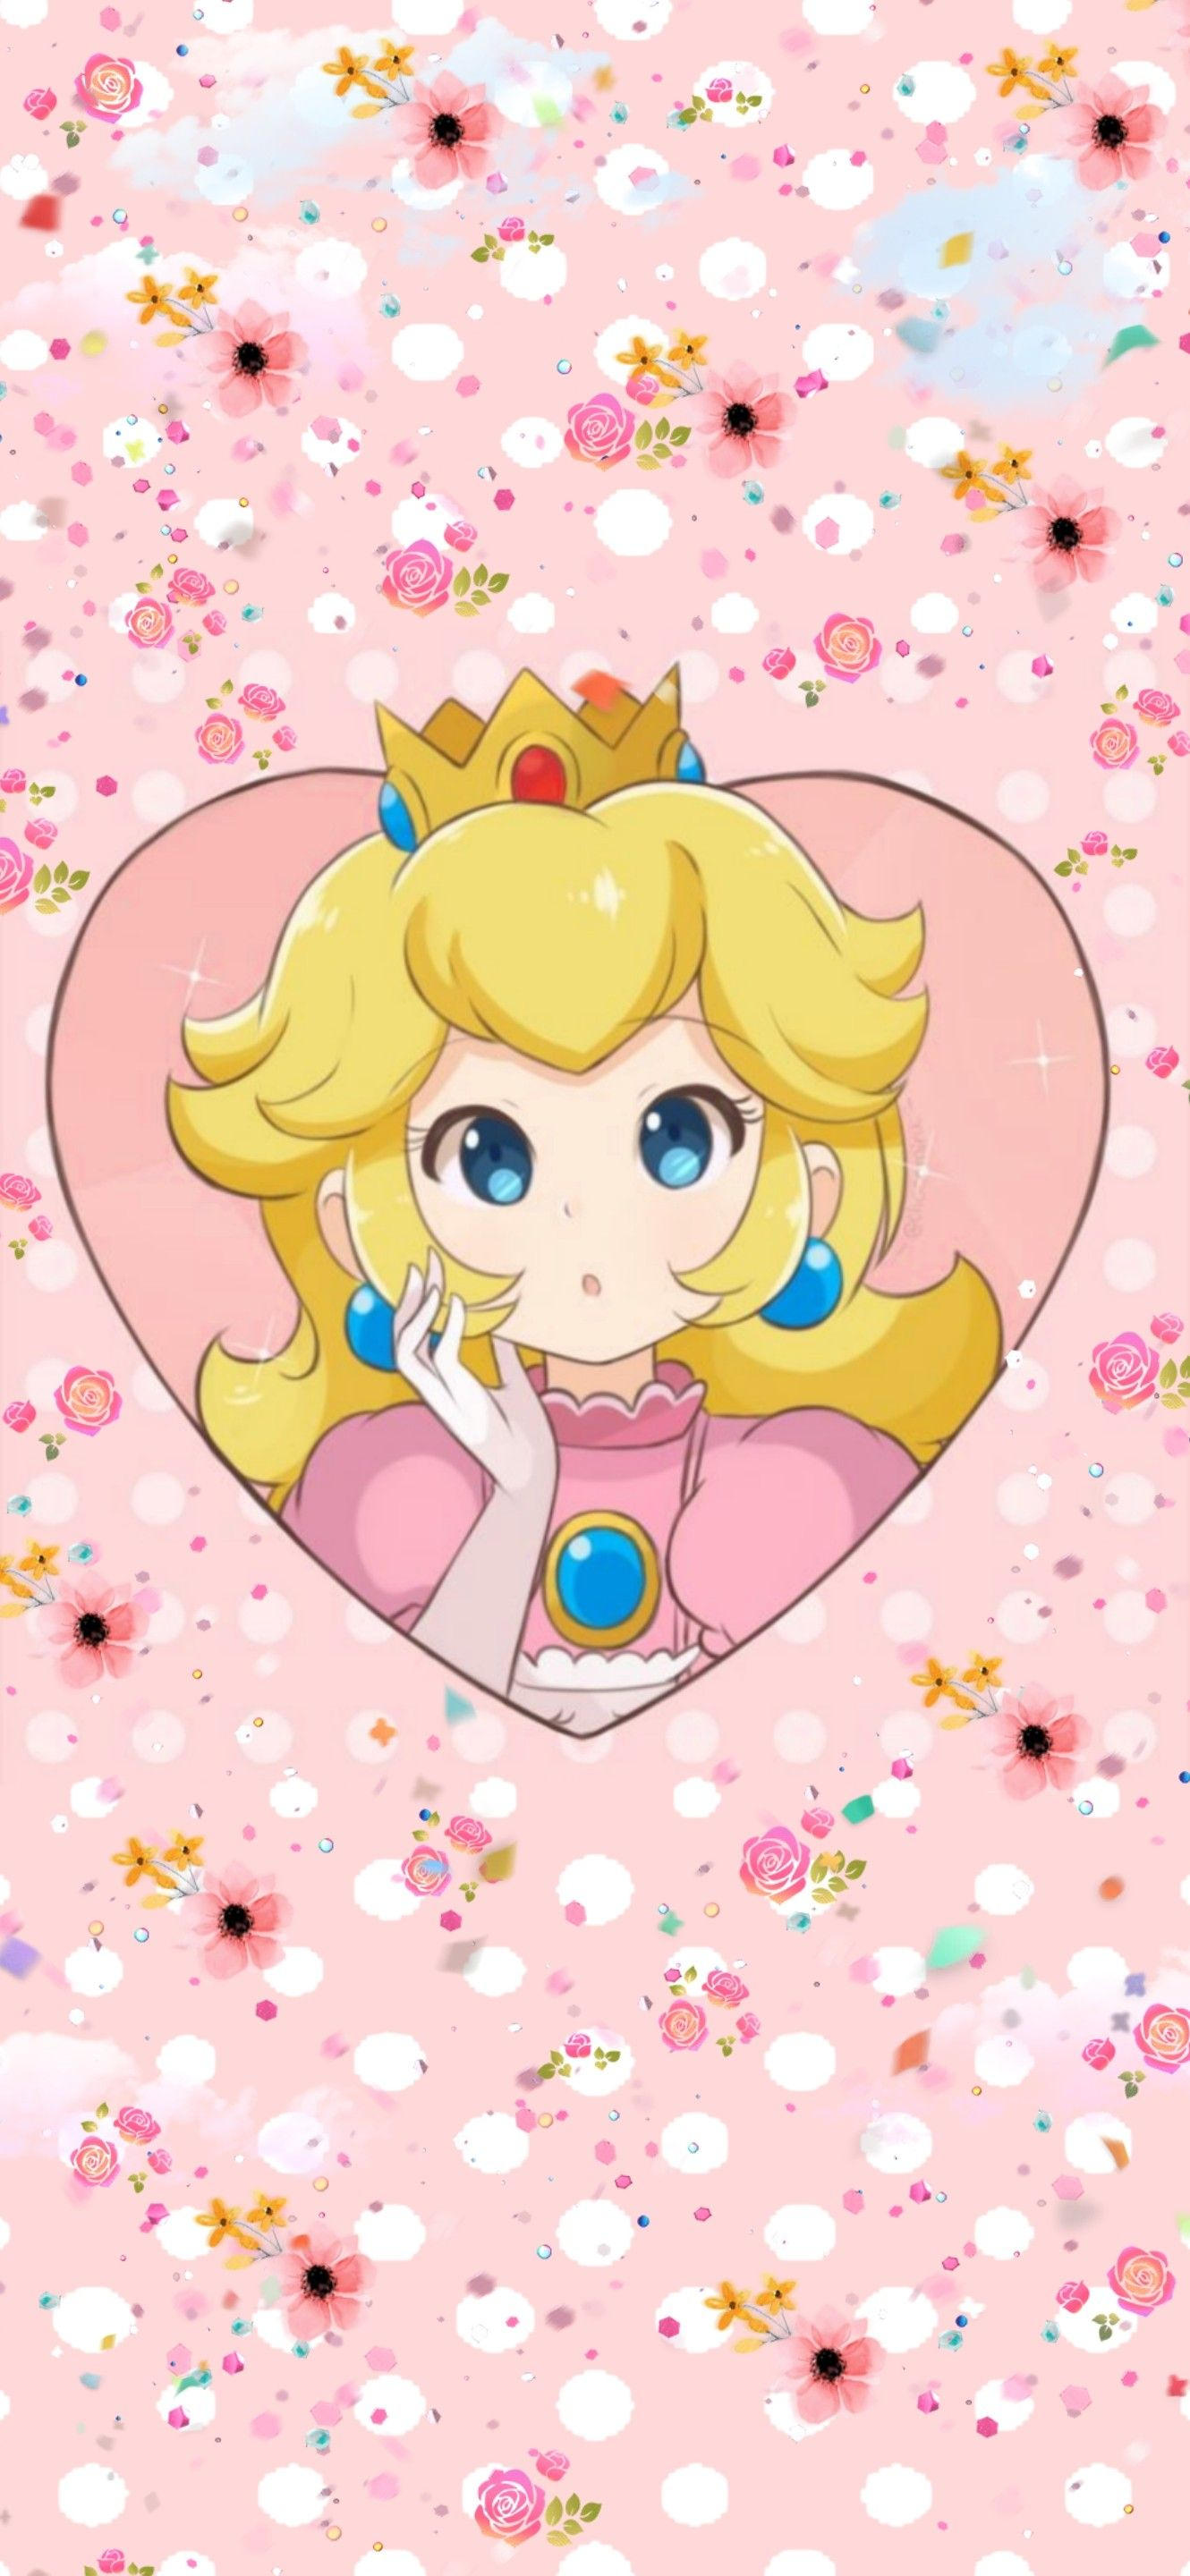 1330x2880 Nintendo Princess Peach aesthetic phone background wallpaper | Princess peach, Phone background wallpaper, Nintendo princess